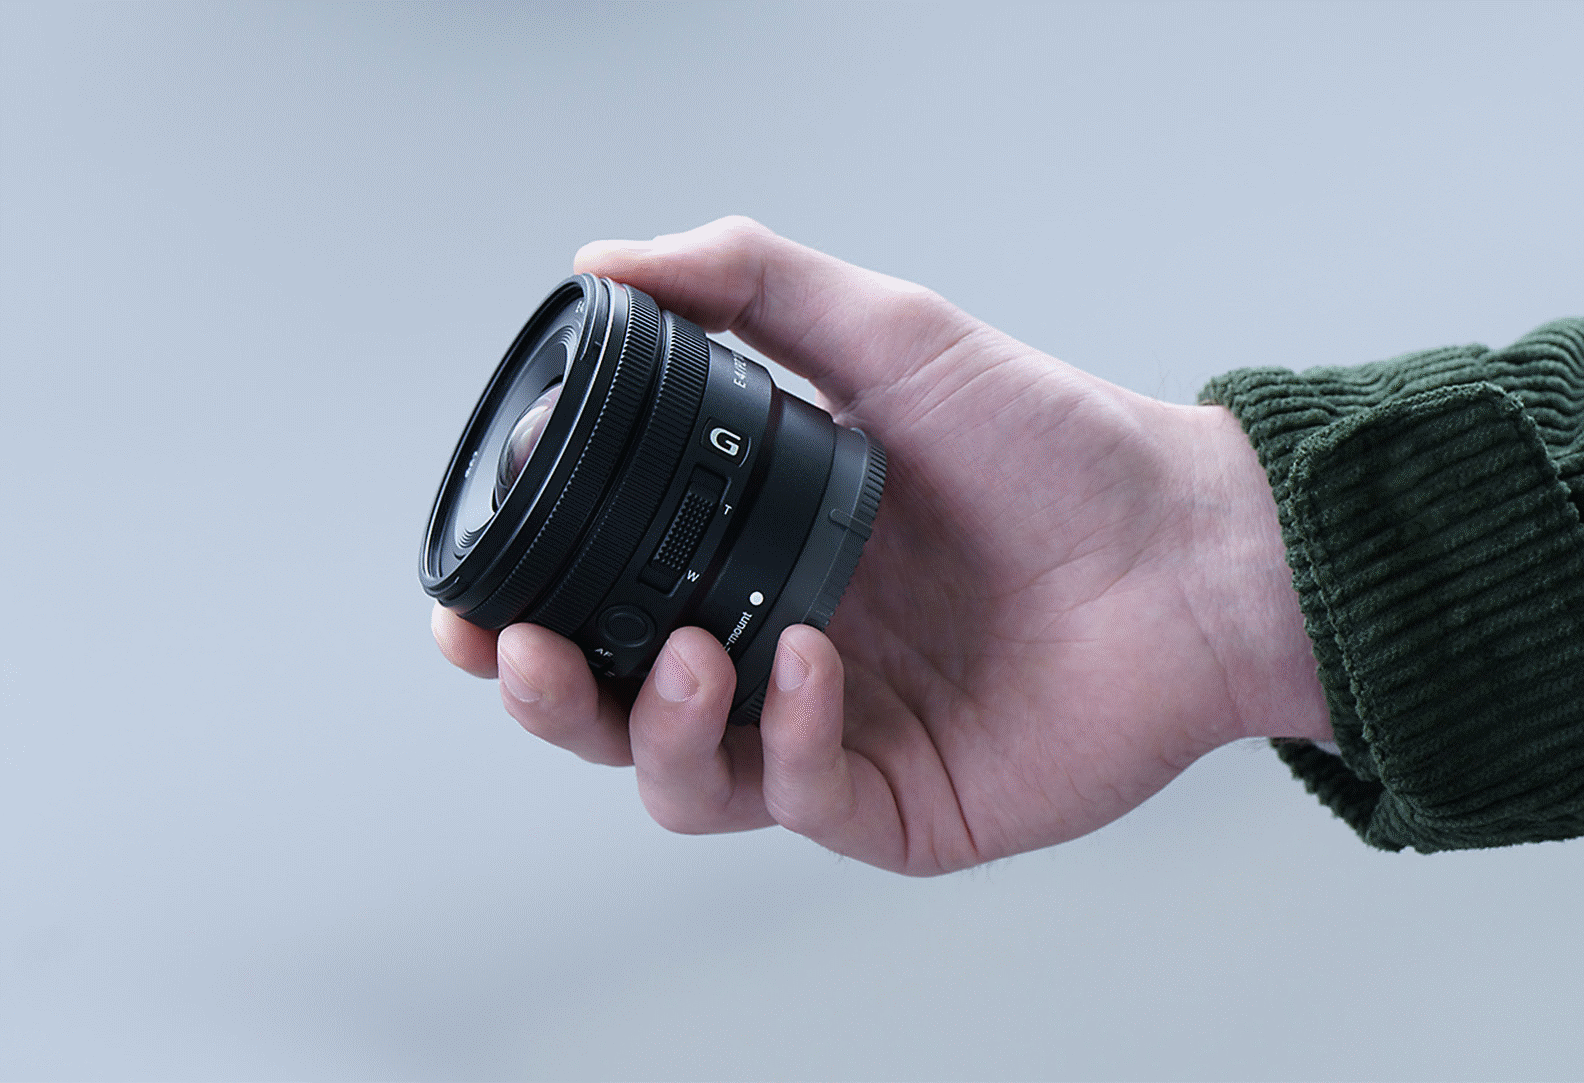 圖片顯示一個人手持 E PZ 10-20mm F4 G，展示外型細小的鏡頭可以握在手中